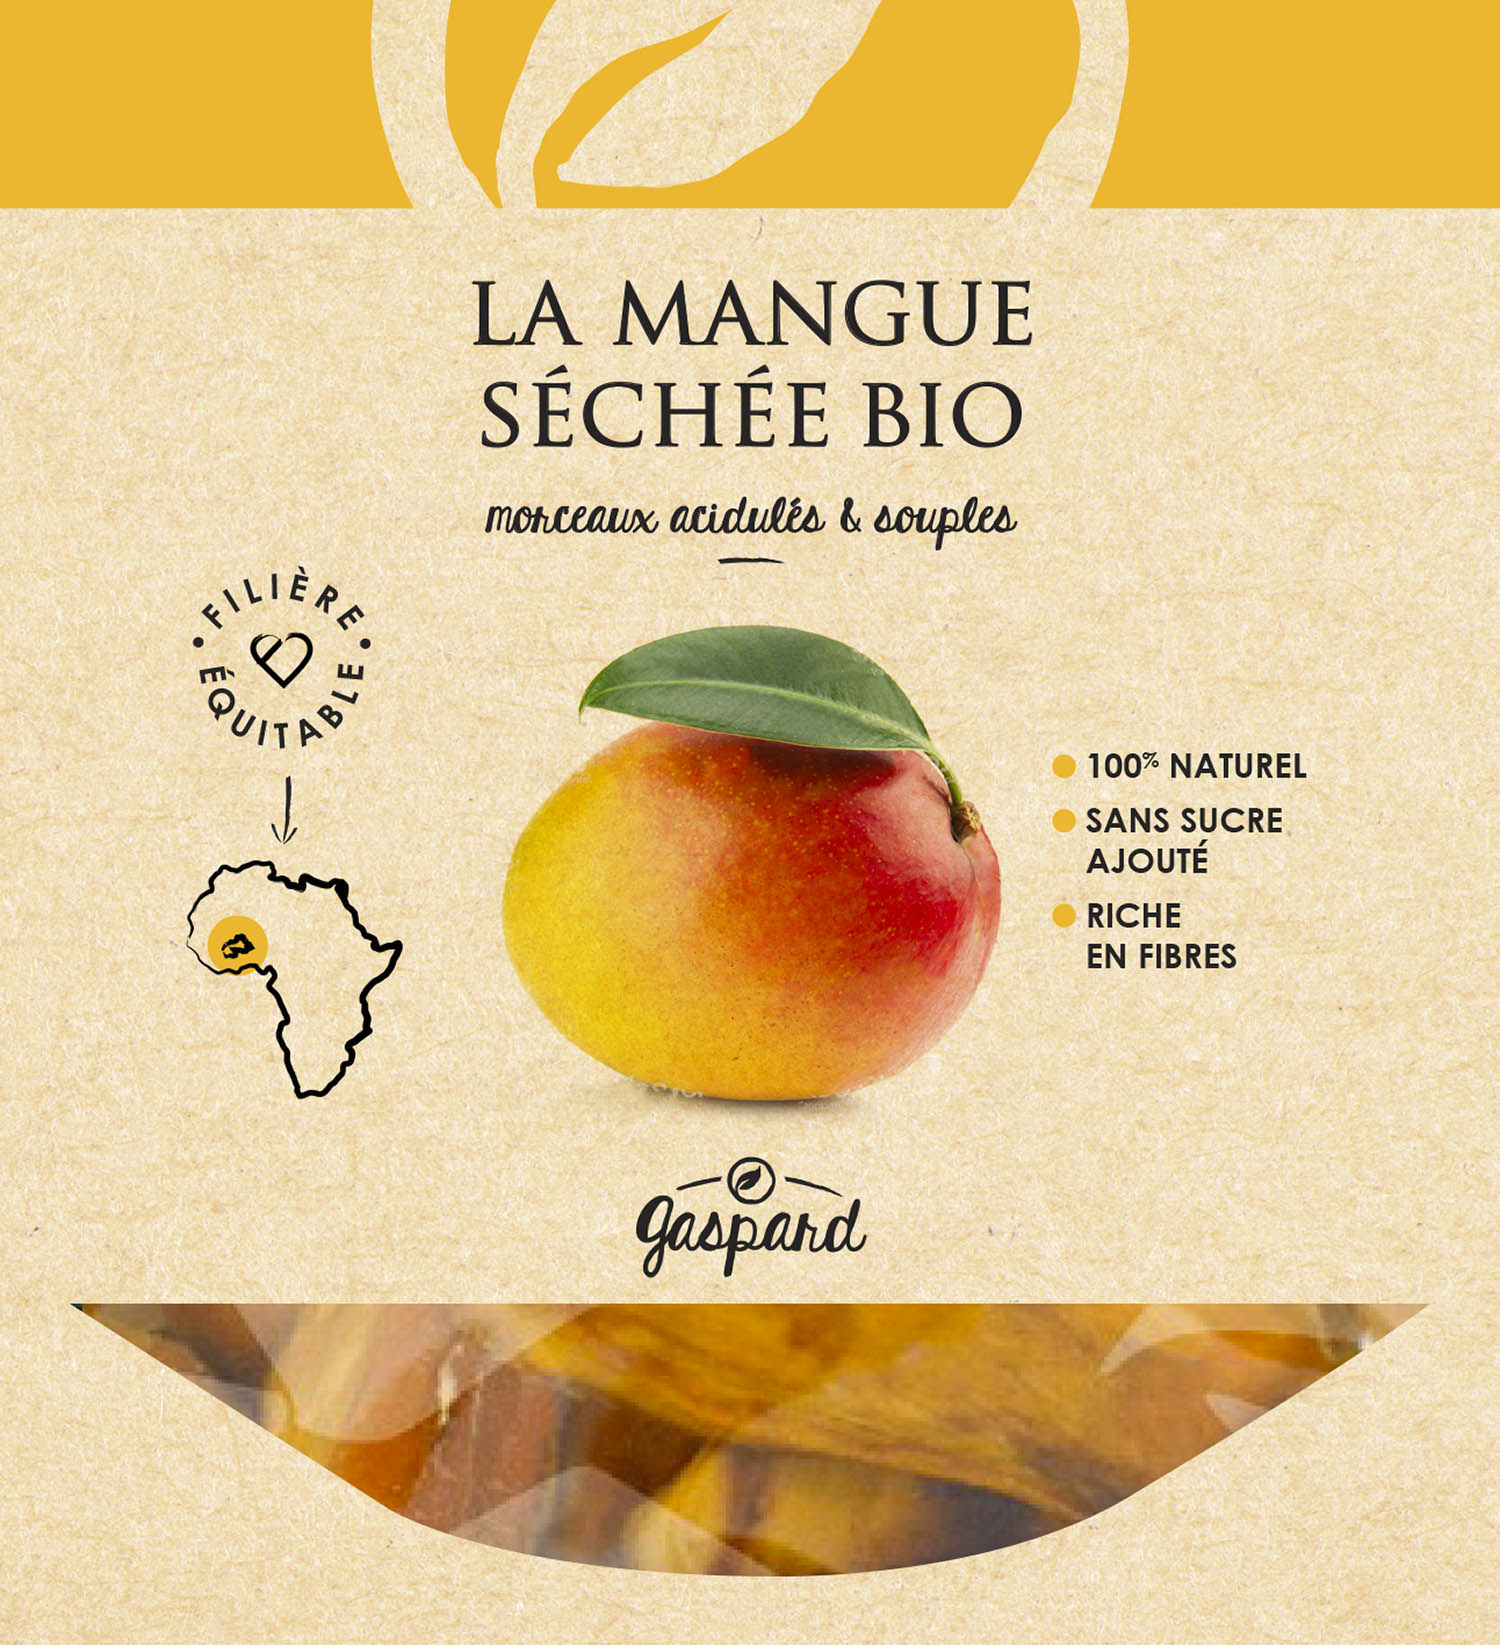 Mangue-sechee-bio-2